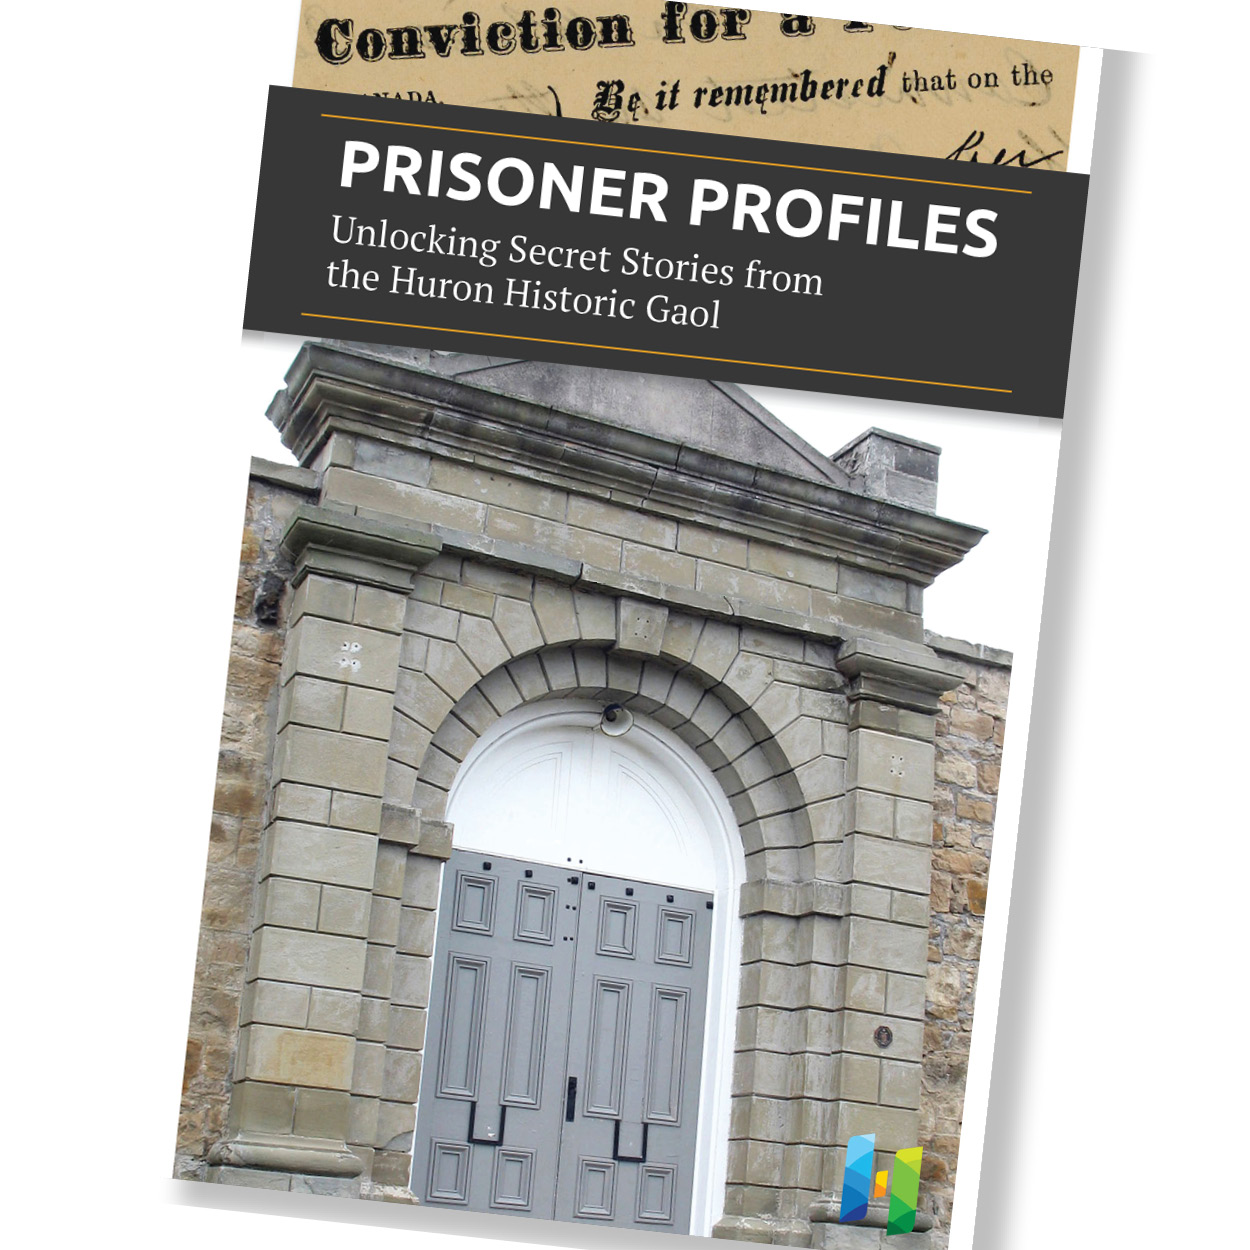 Huron Historic Gaol Prisoner Profiles